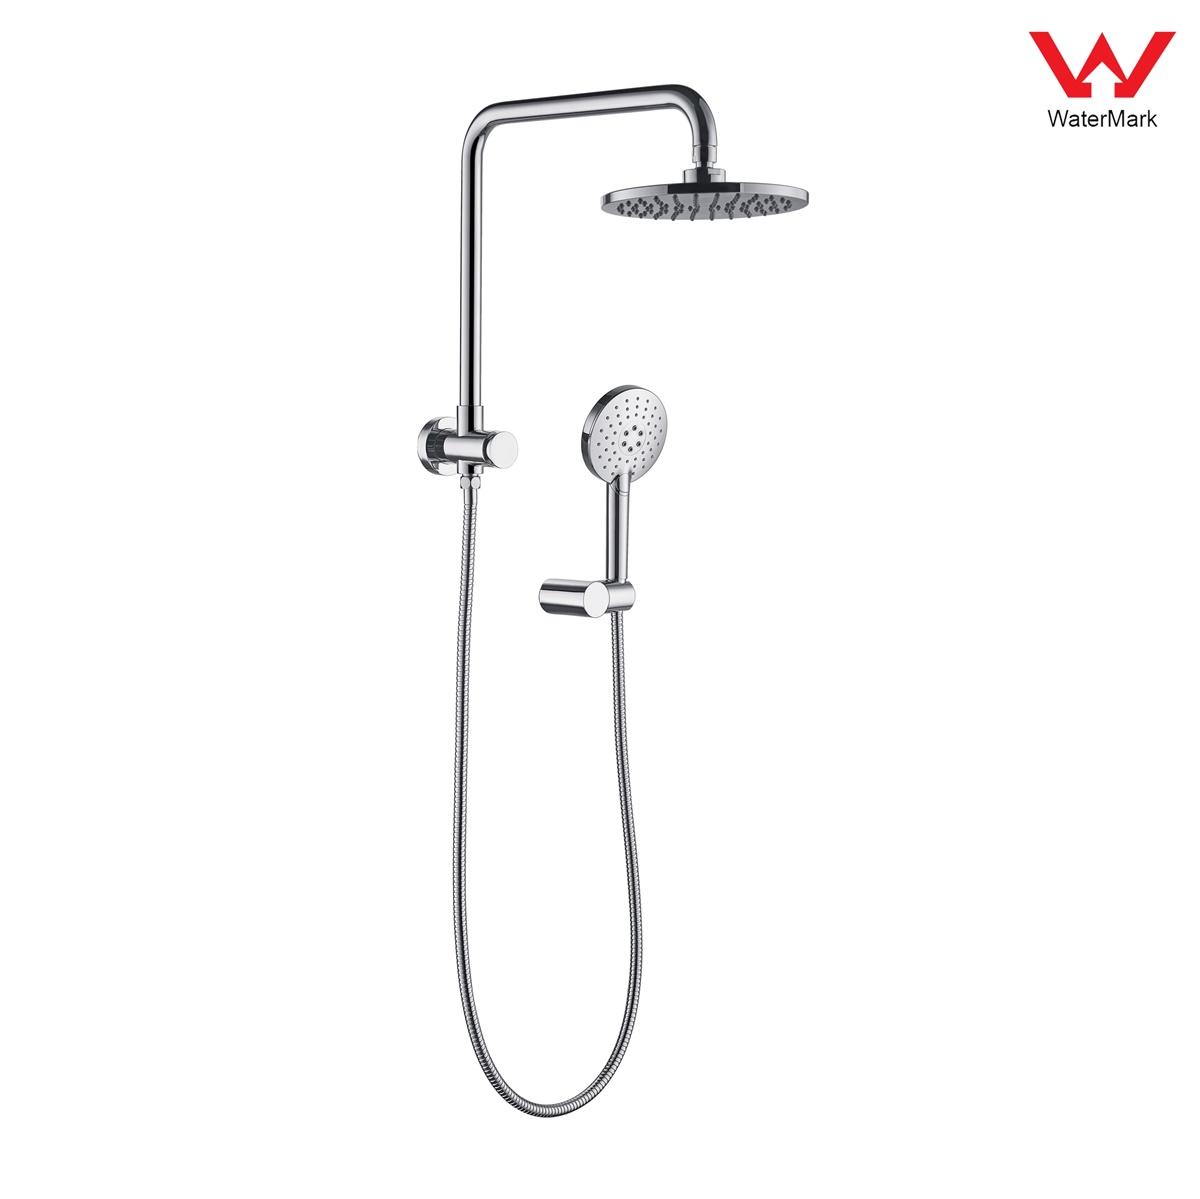 DA610029CP Watermark tanúsítvánnyal rendelkező zuhanykészletek, esőzuhany-készlet, tolózuhany-készlet;